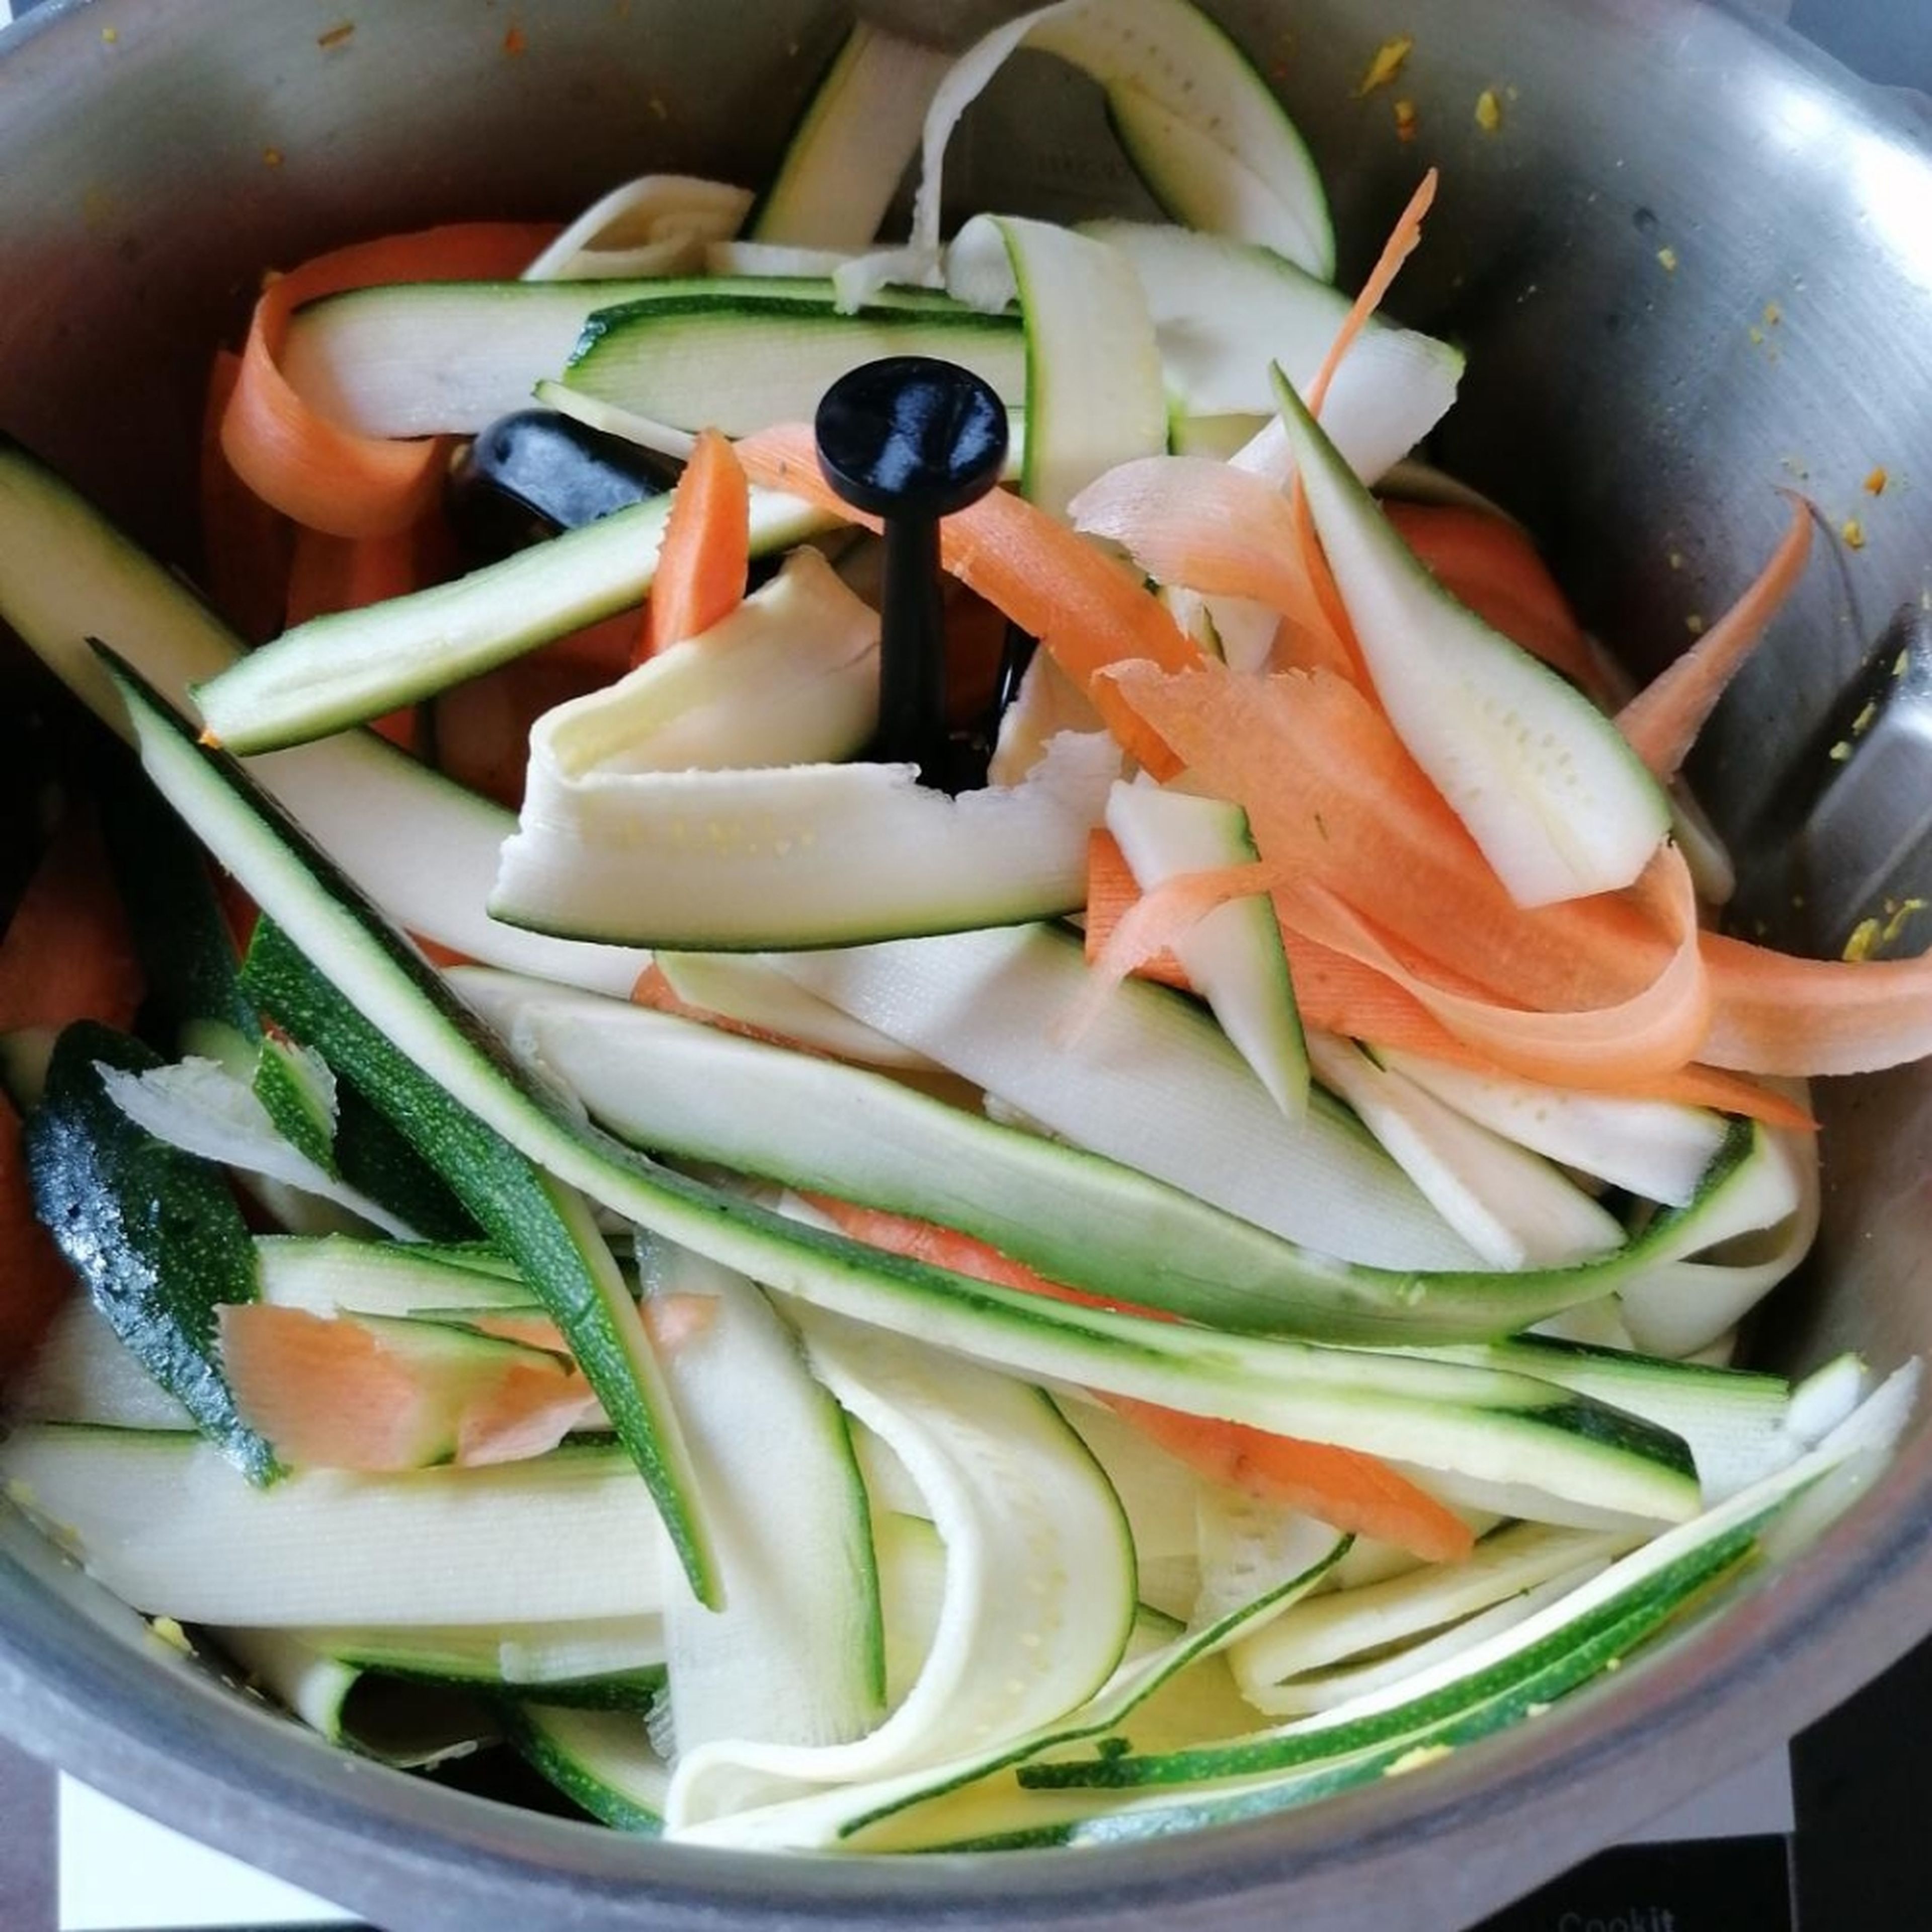 Nun die abgetropften Kichererbsen, Zucchini- und Karottenstreifen zugeben und alles auf Stufe 1 bei 96°C für 13-15 Min. köcheln lassen. Zwischendurch das Gemüse mit dem Spatel nach unten schieben. Wer das Gemüse weicher mag, einfach noch etwas Zeit zugeben.